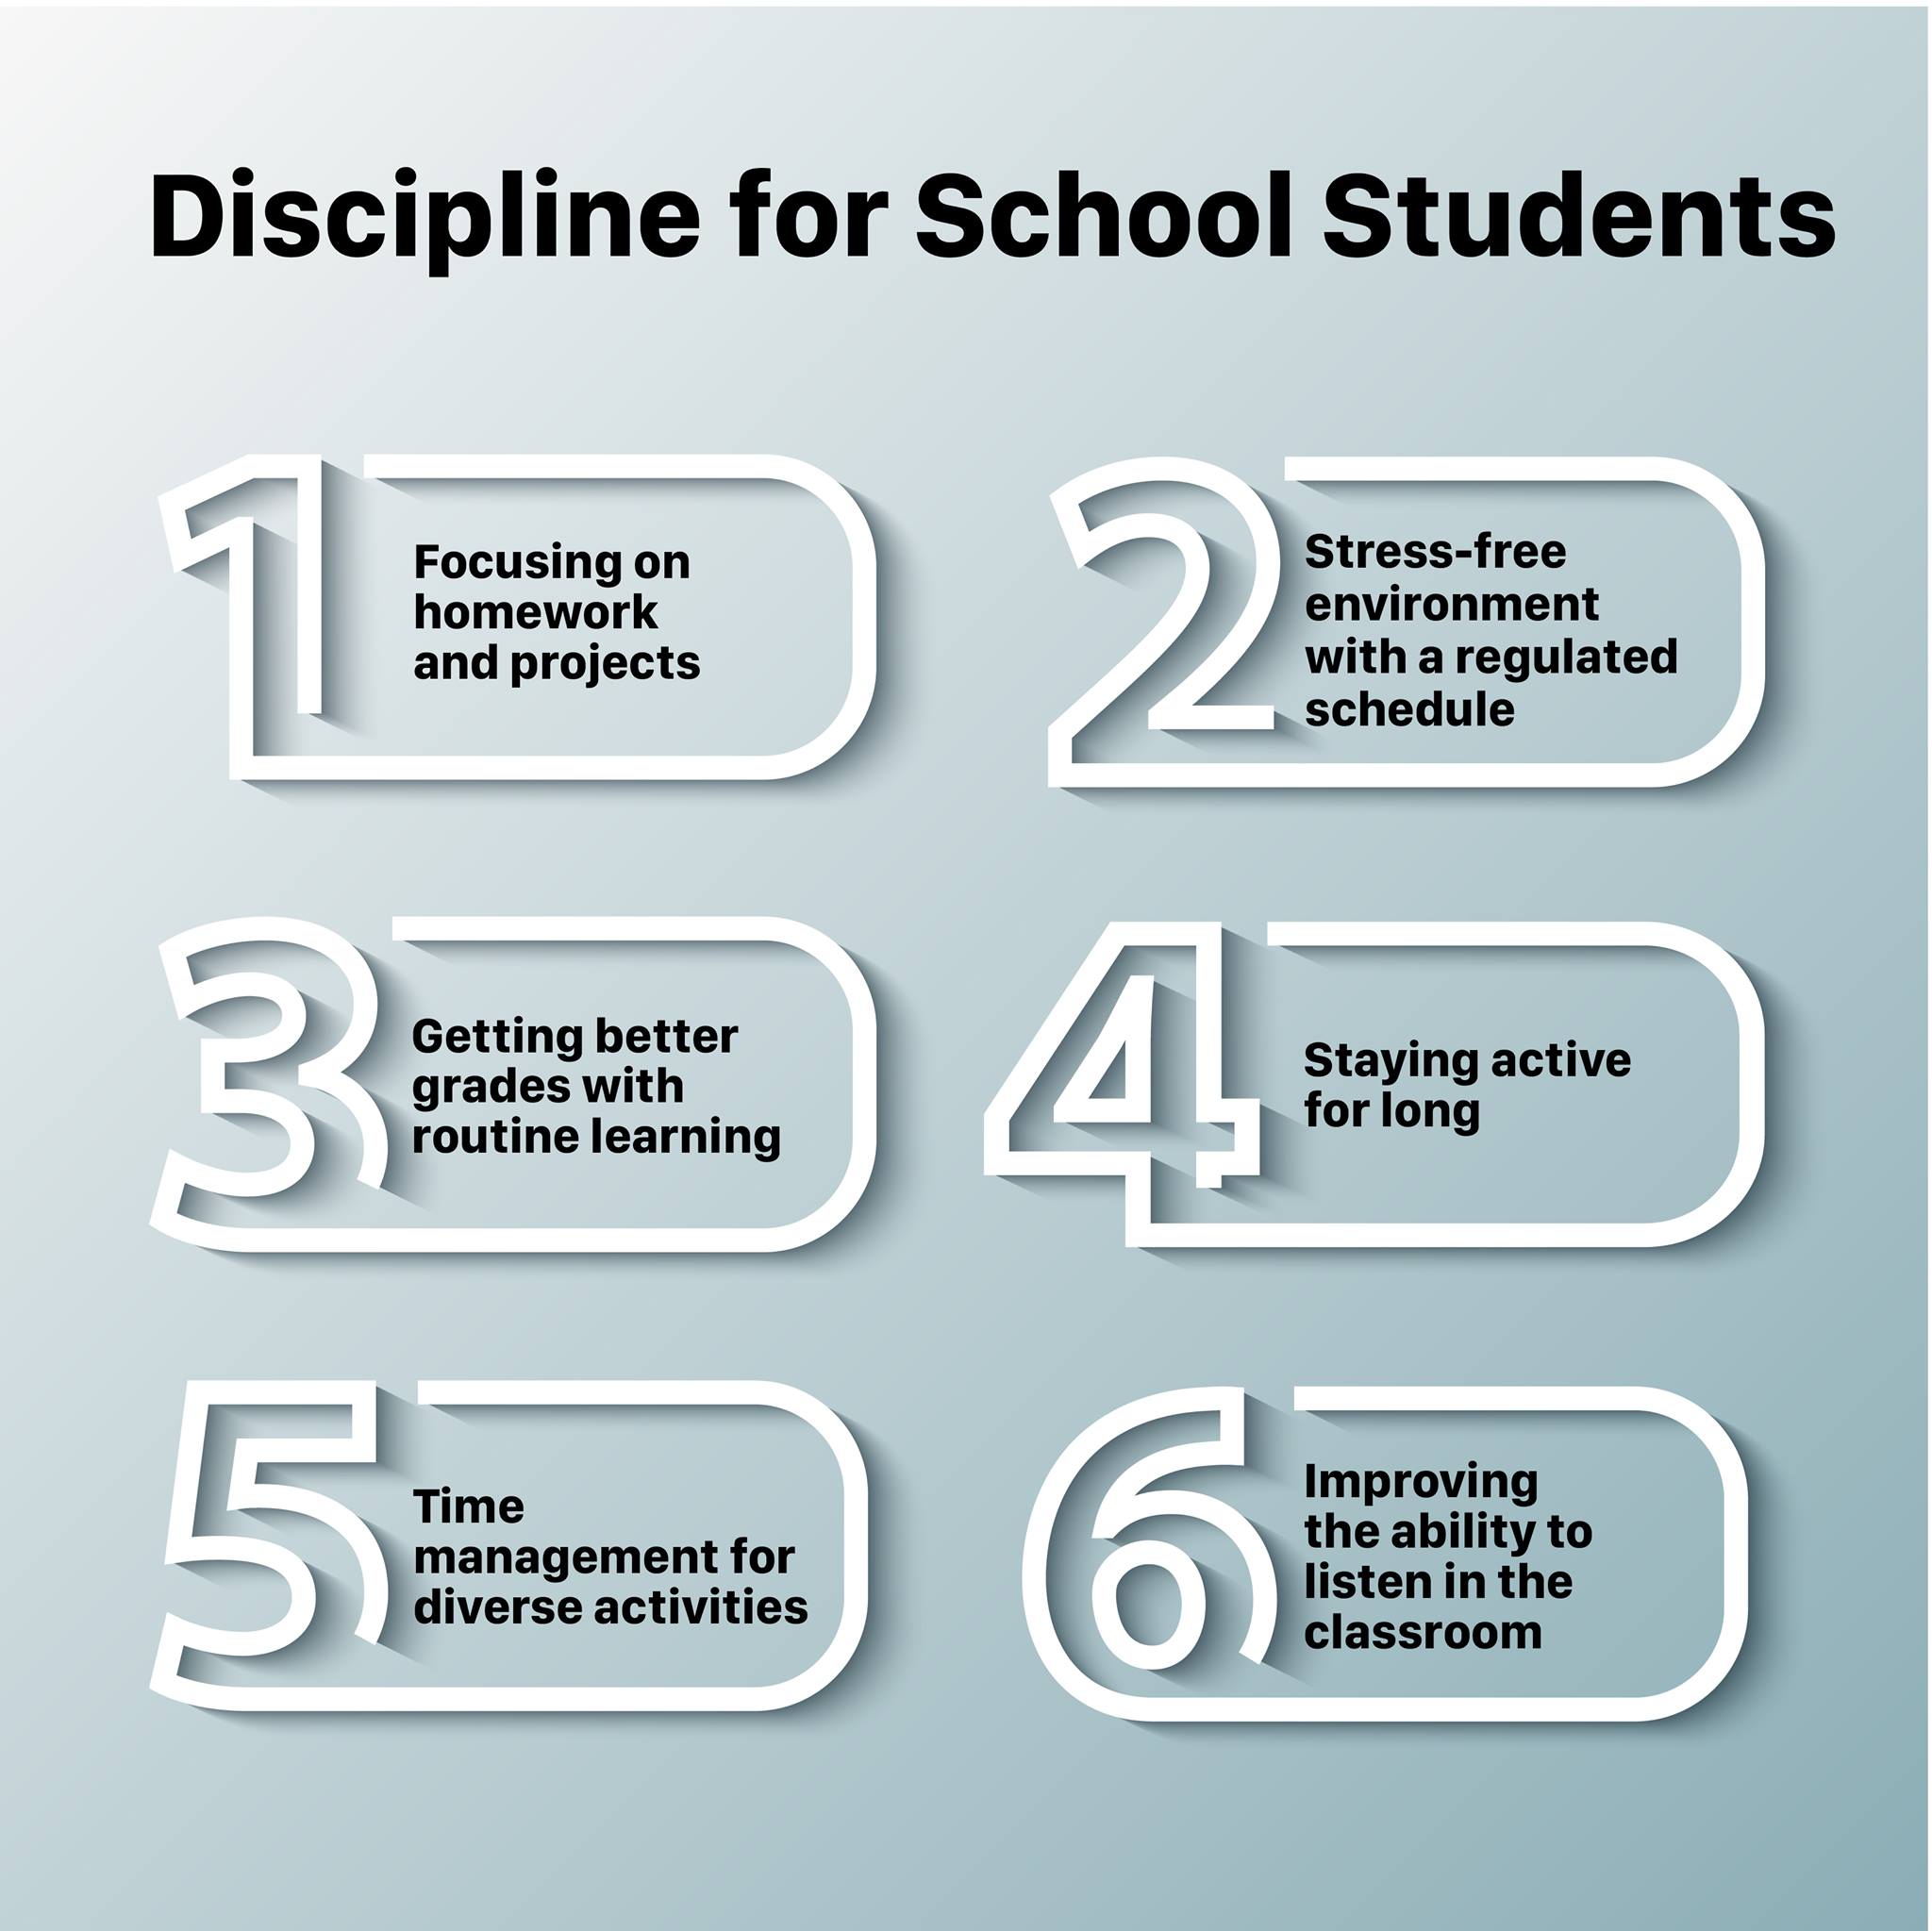 Discipline for School Students